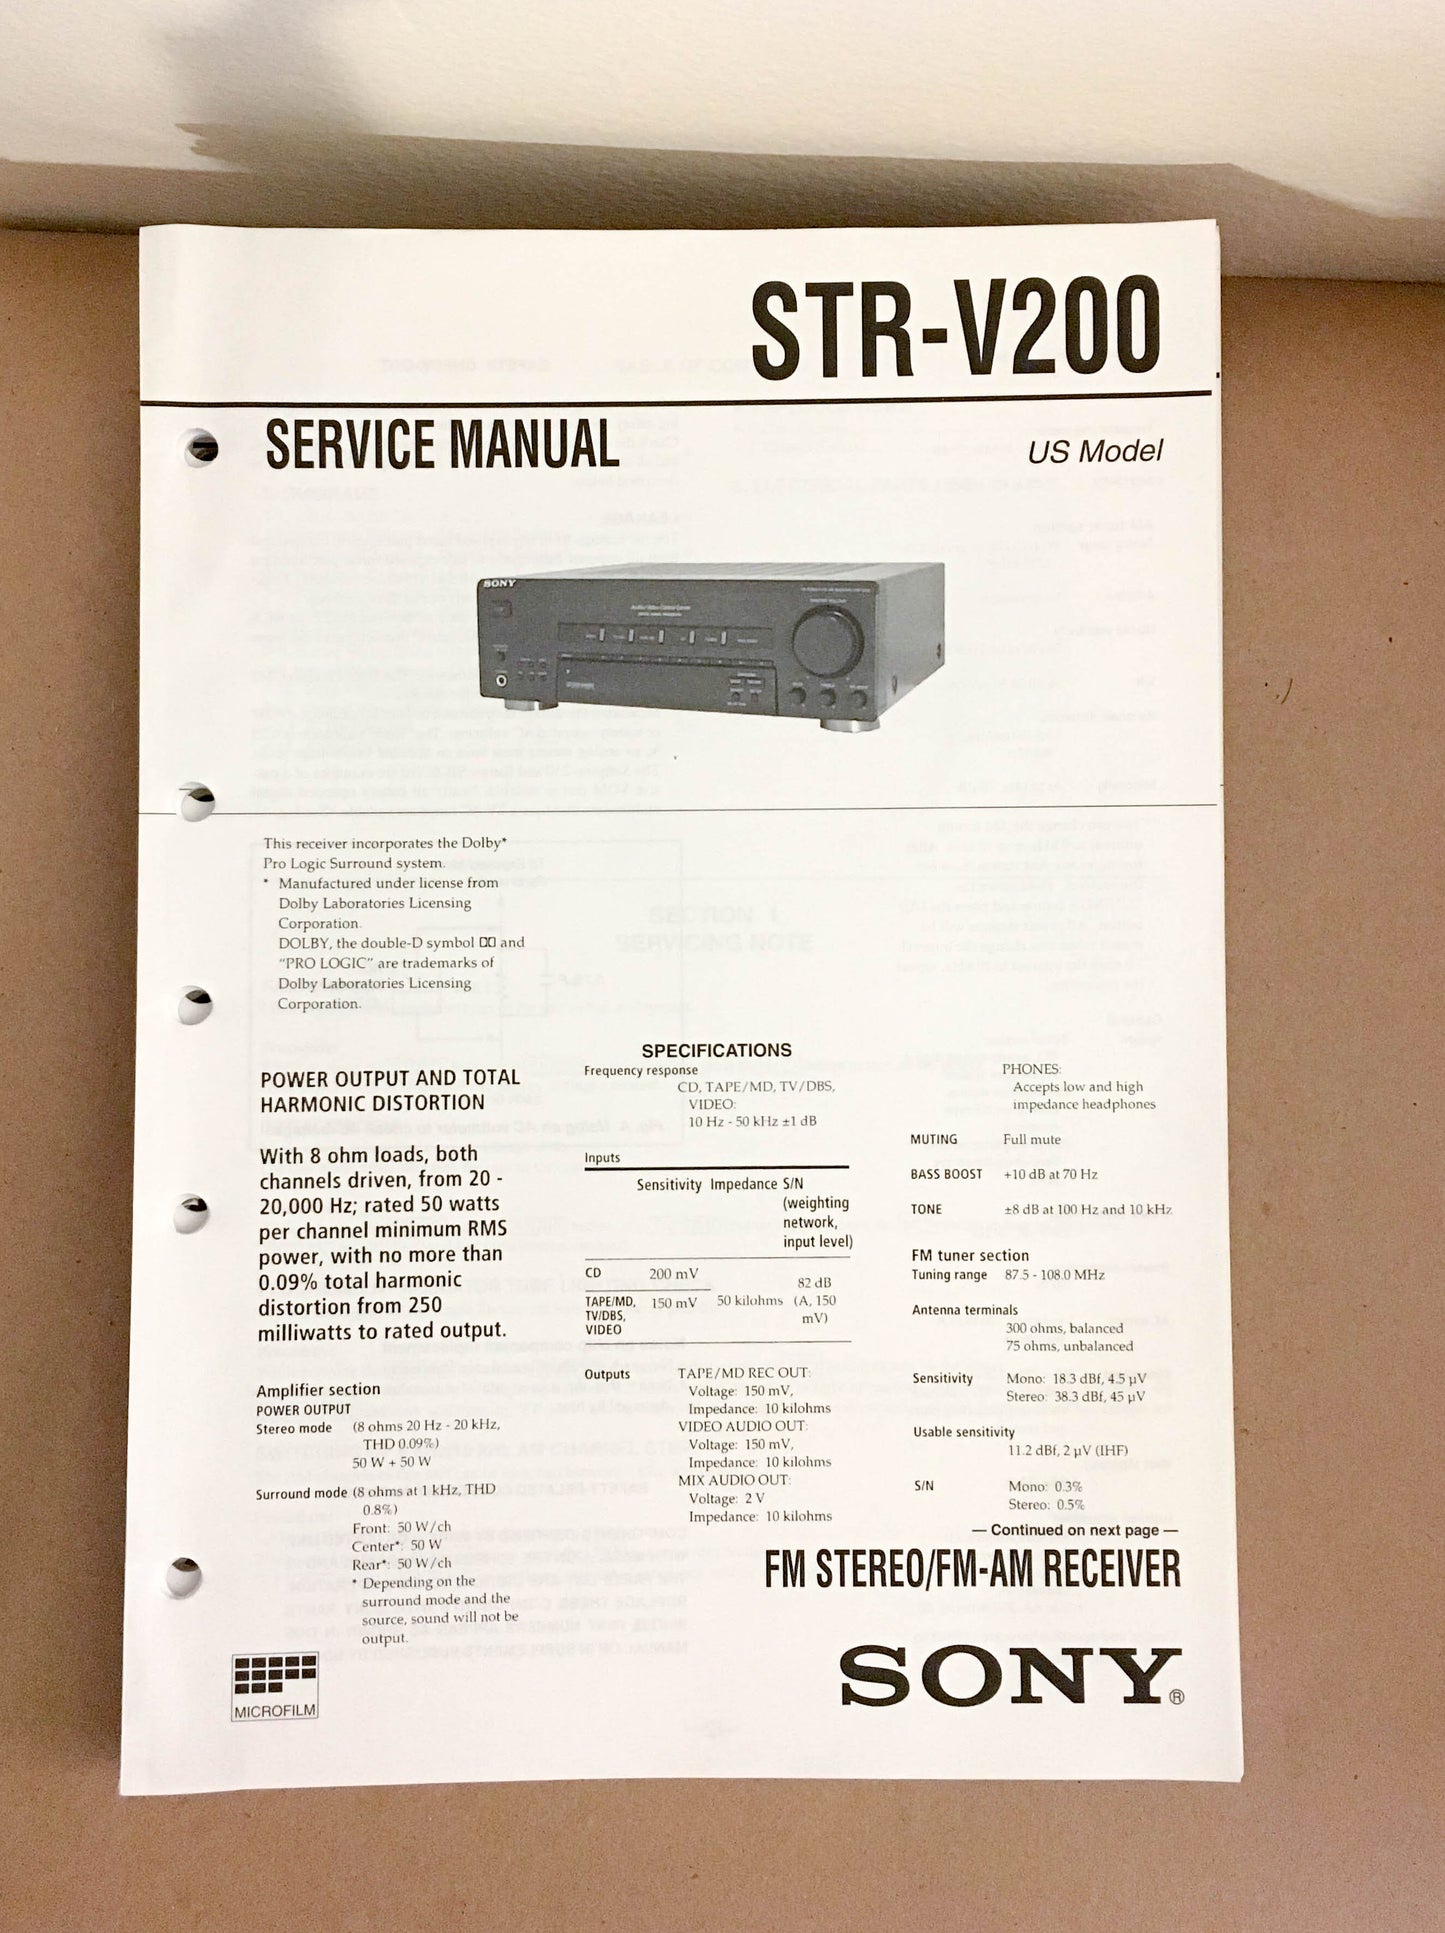 Sony STR-V200 Receiver  Service Manual *Original*